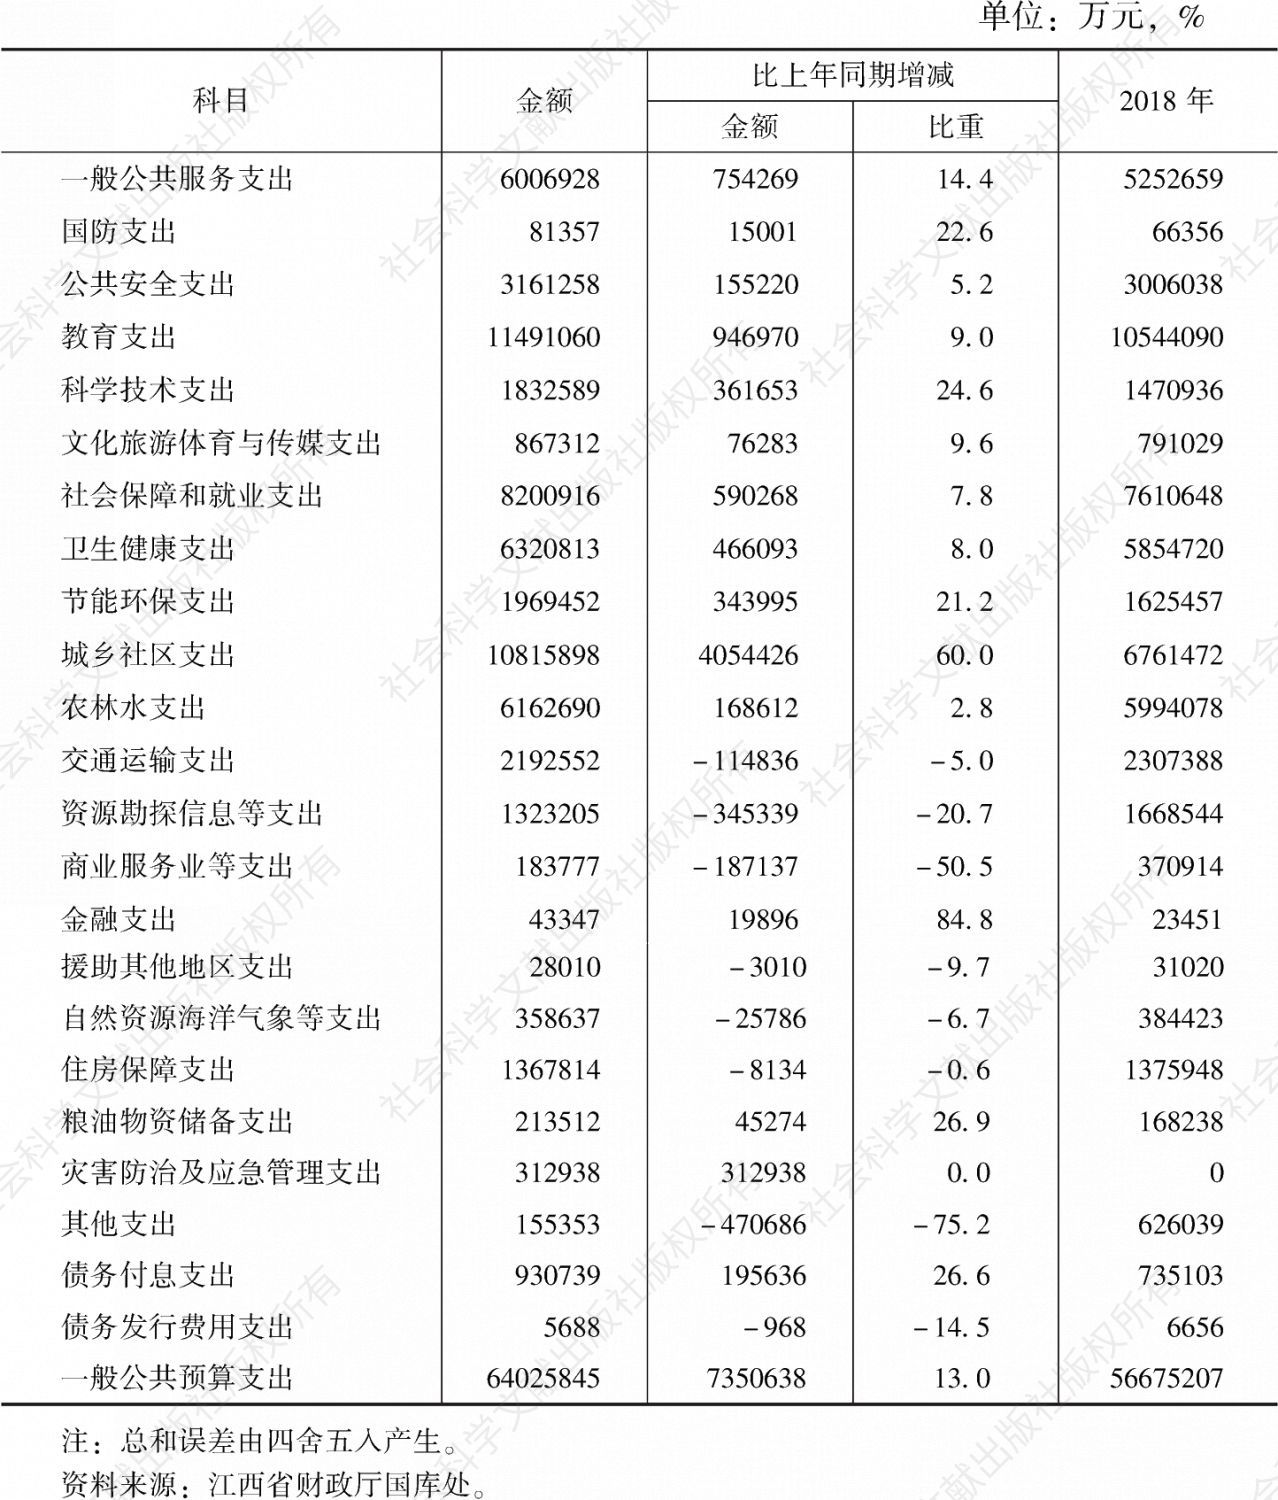 表2 2019年江西省一般公共预算支出分项目执行情况